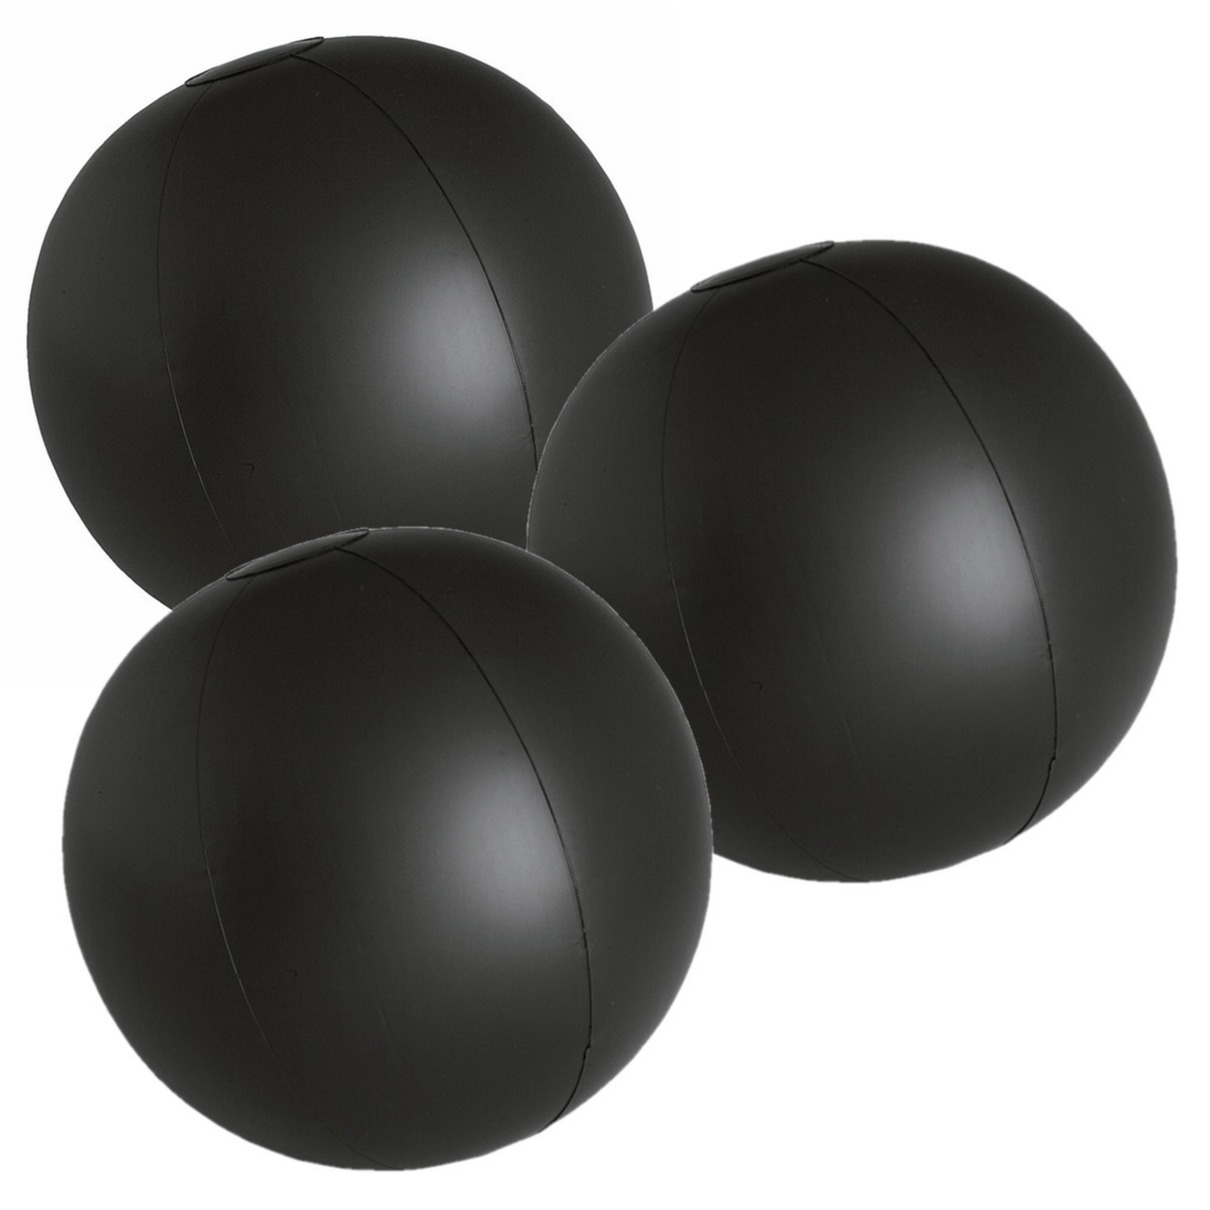 6x stuks opblaasbare zwembad strandballen plastic zwart 28 cm